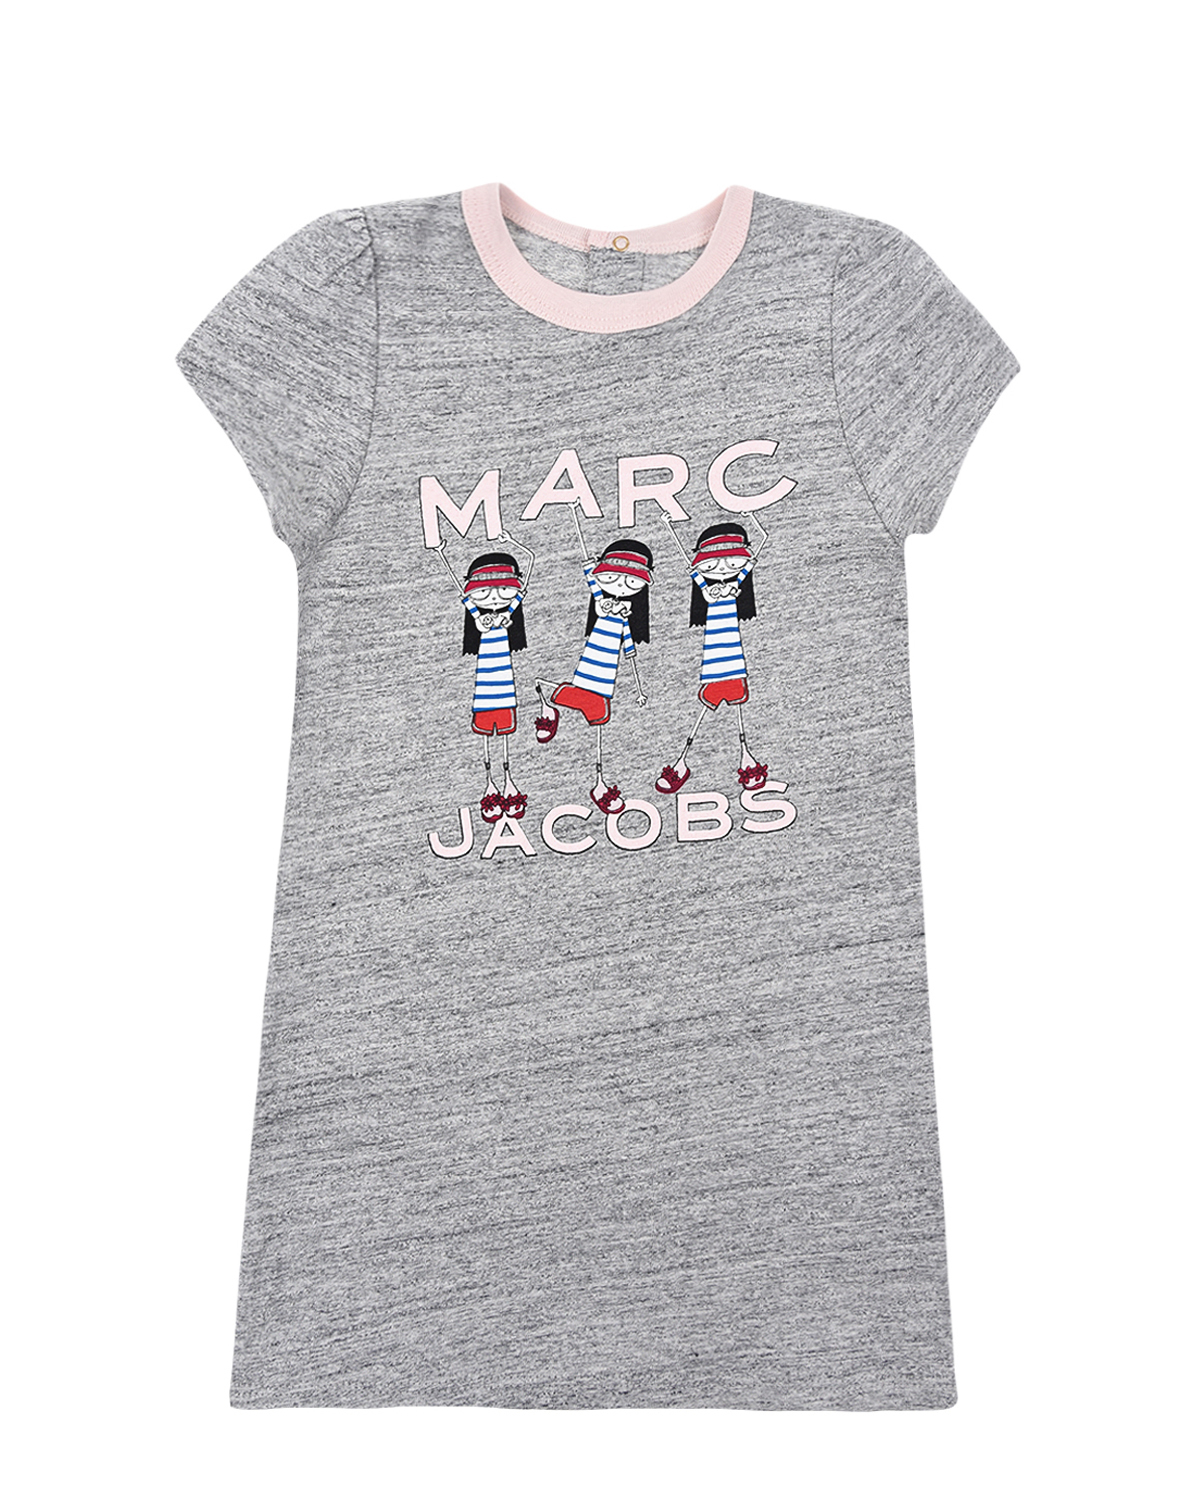 Серое платье-футболка с принтом "девочки" Little Marc Jacobs детское - фото 1